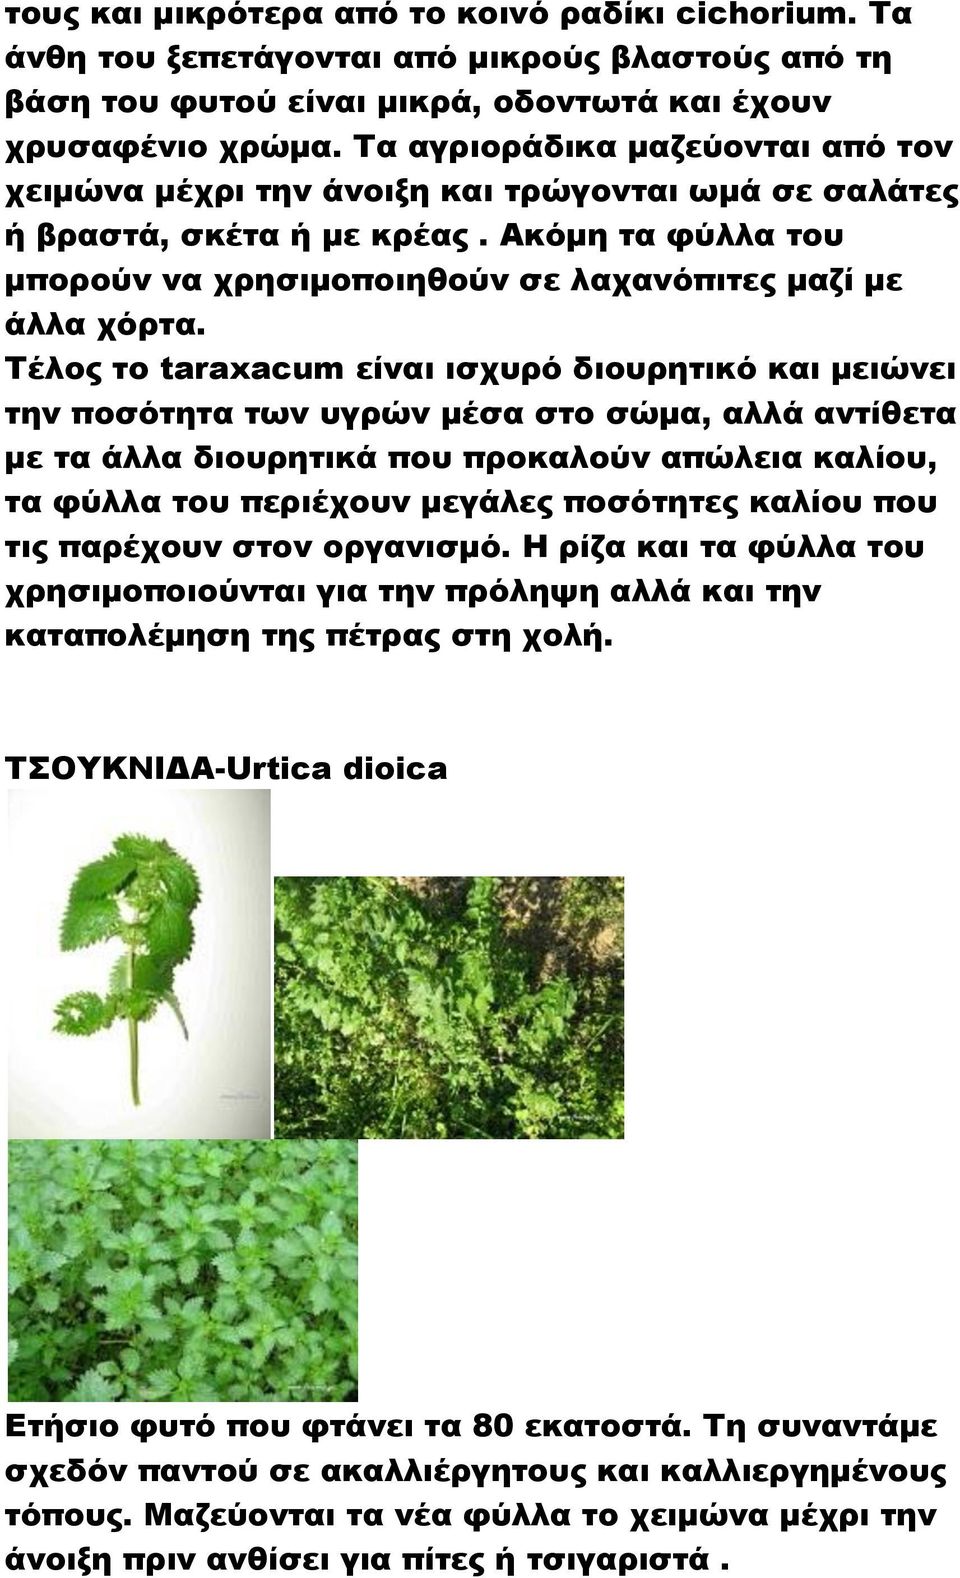 Σέλος το taraxacum είναι ισχυρό διουρητικό και μειώνει την ποσότητα των υγρών μέσα στο σώμα, αλλά αντίθετα με τα άλλα διουρητικά που προκαλούν απώλεια καλίου, τα φύλλα του περιέχουν μεγάλες ποσότητες